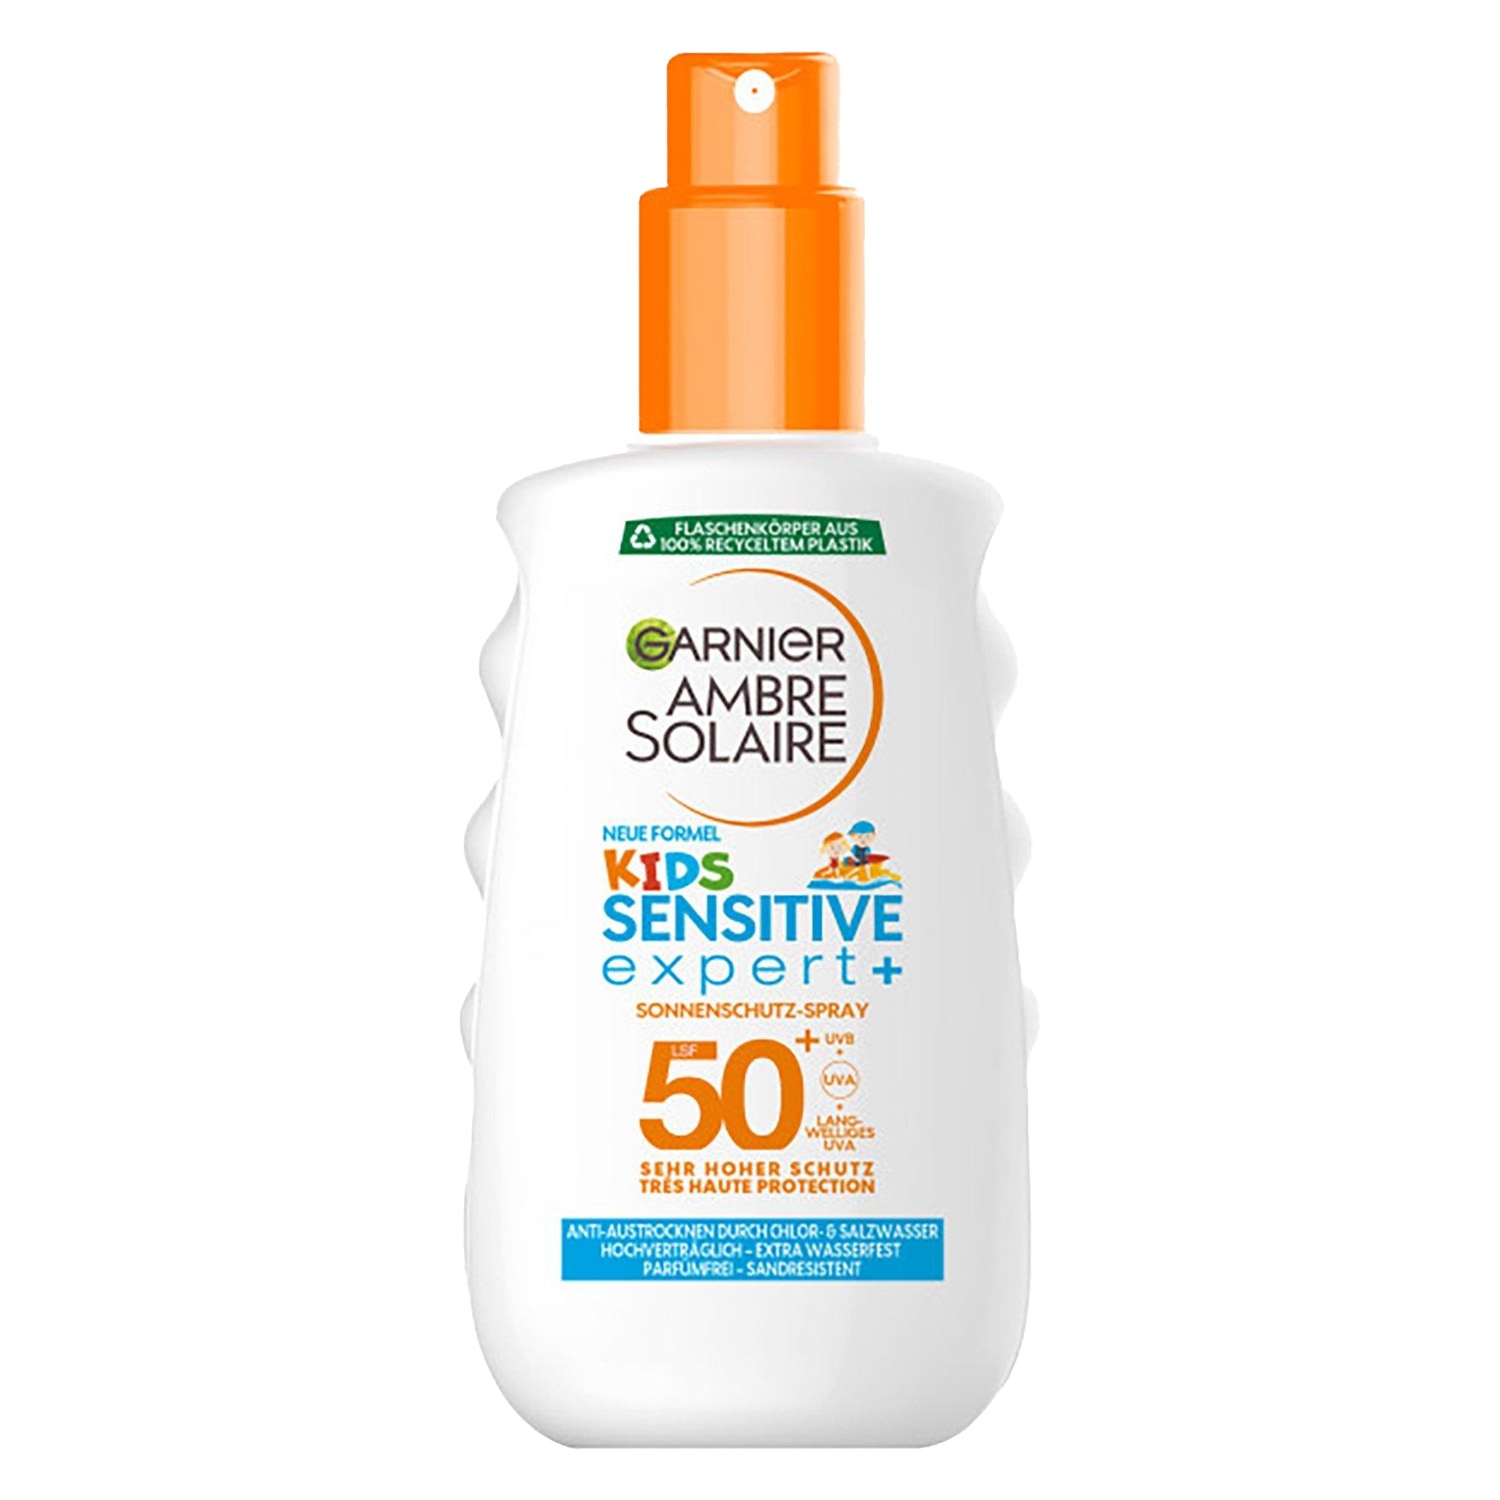 Produktbild von Ambre Solaire - Kids Sensitive expert+ Sonnenschutz-Spray LSF 50+